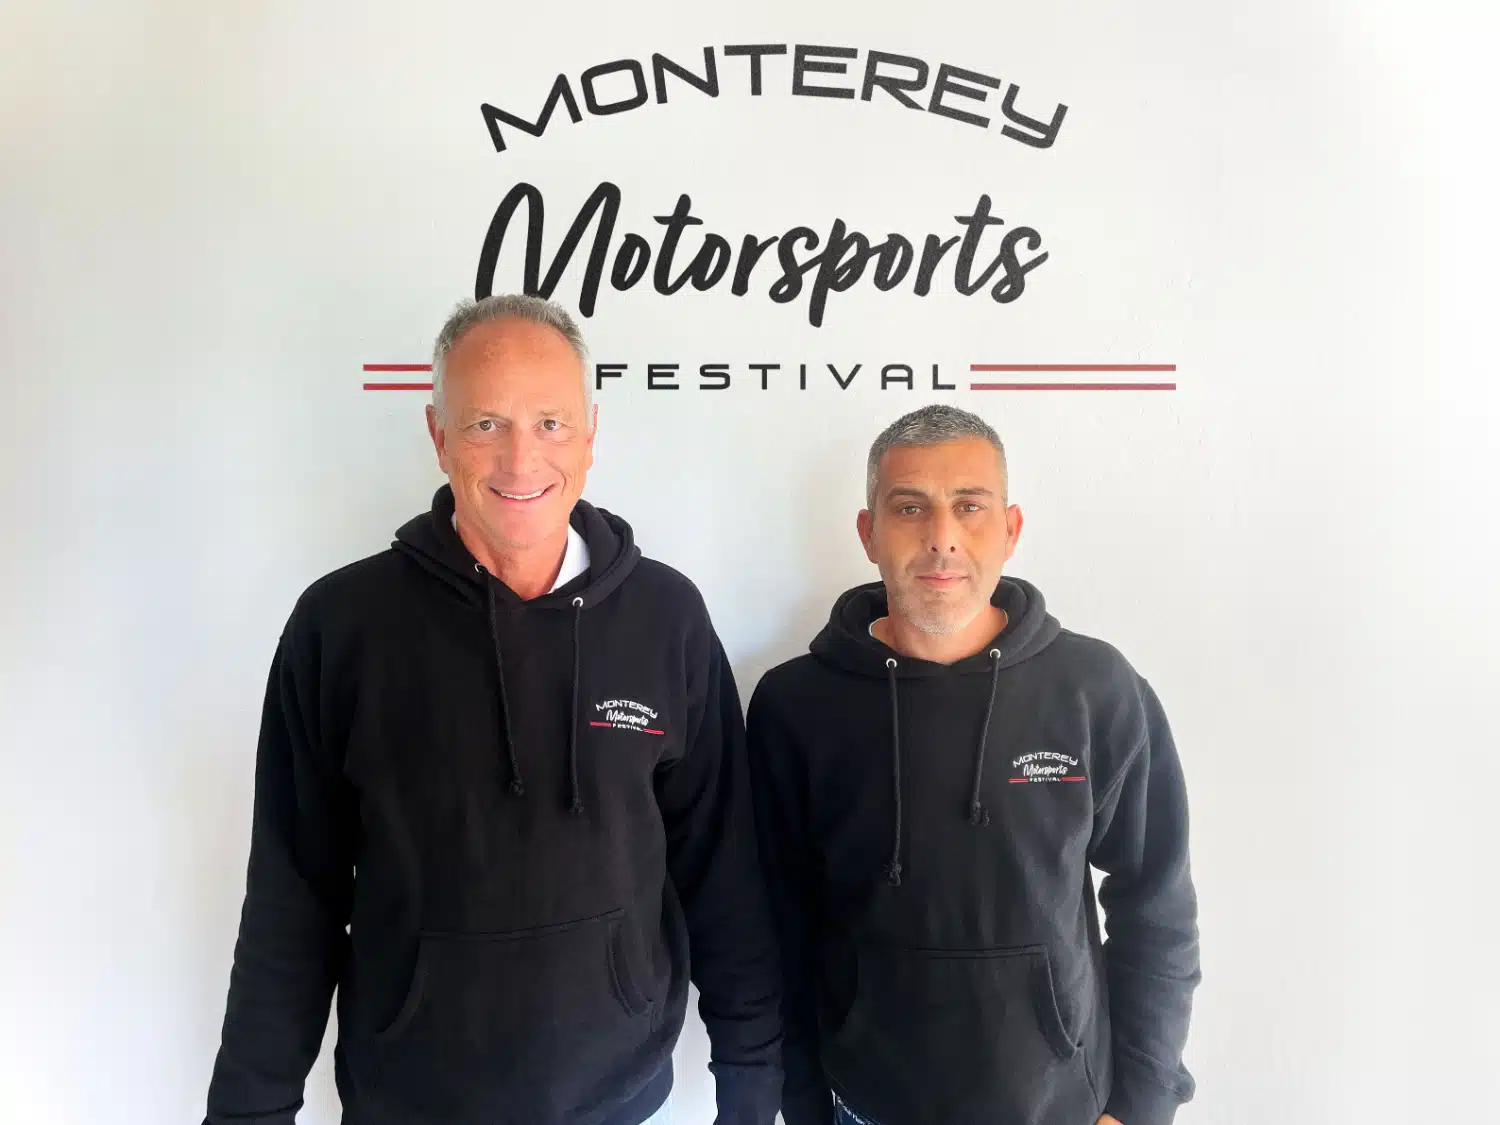 Il Monterey Motorsports Festival arruola nel team Raffaello Porro